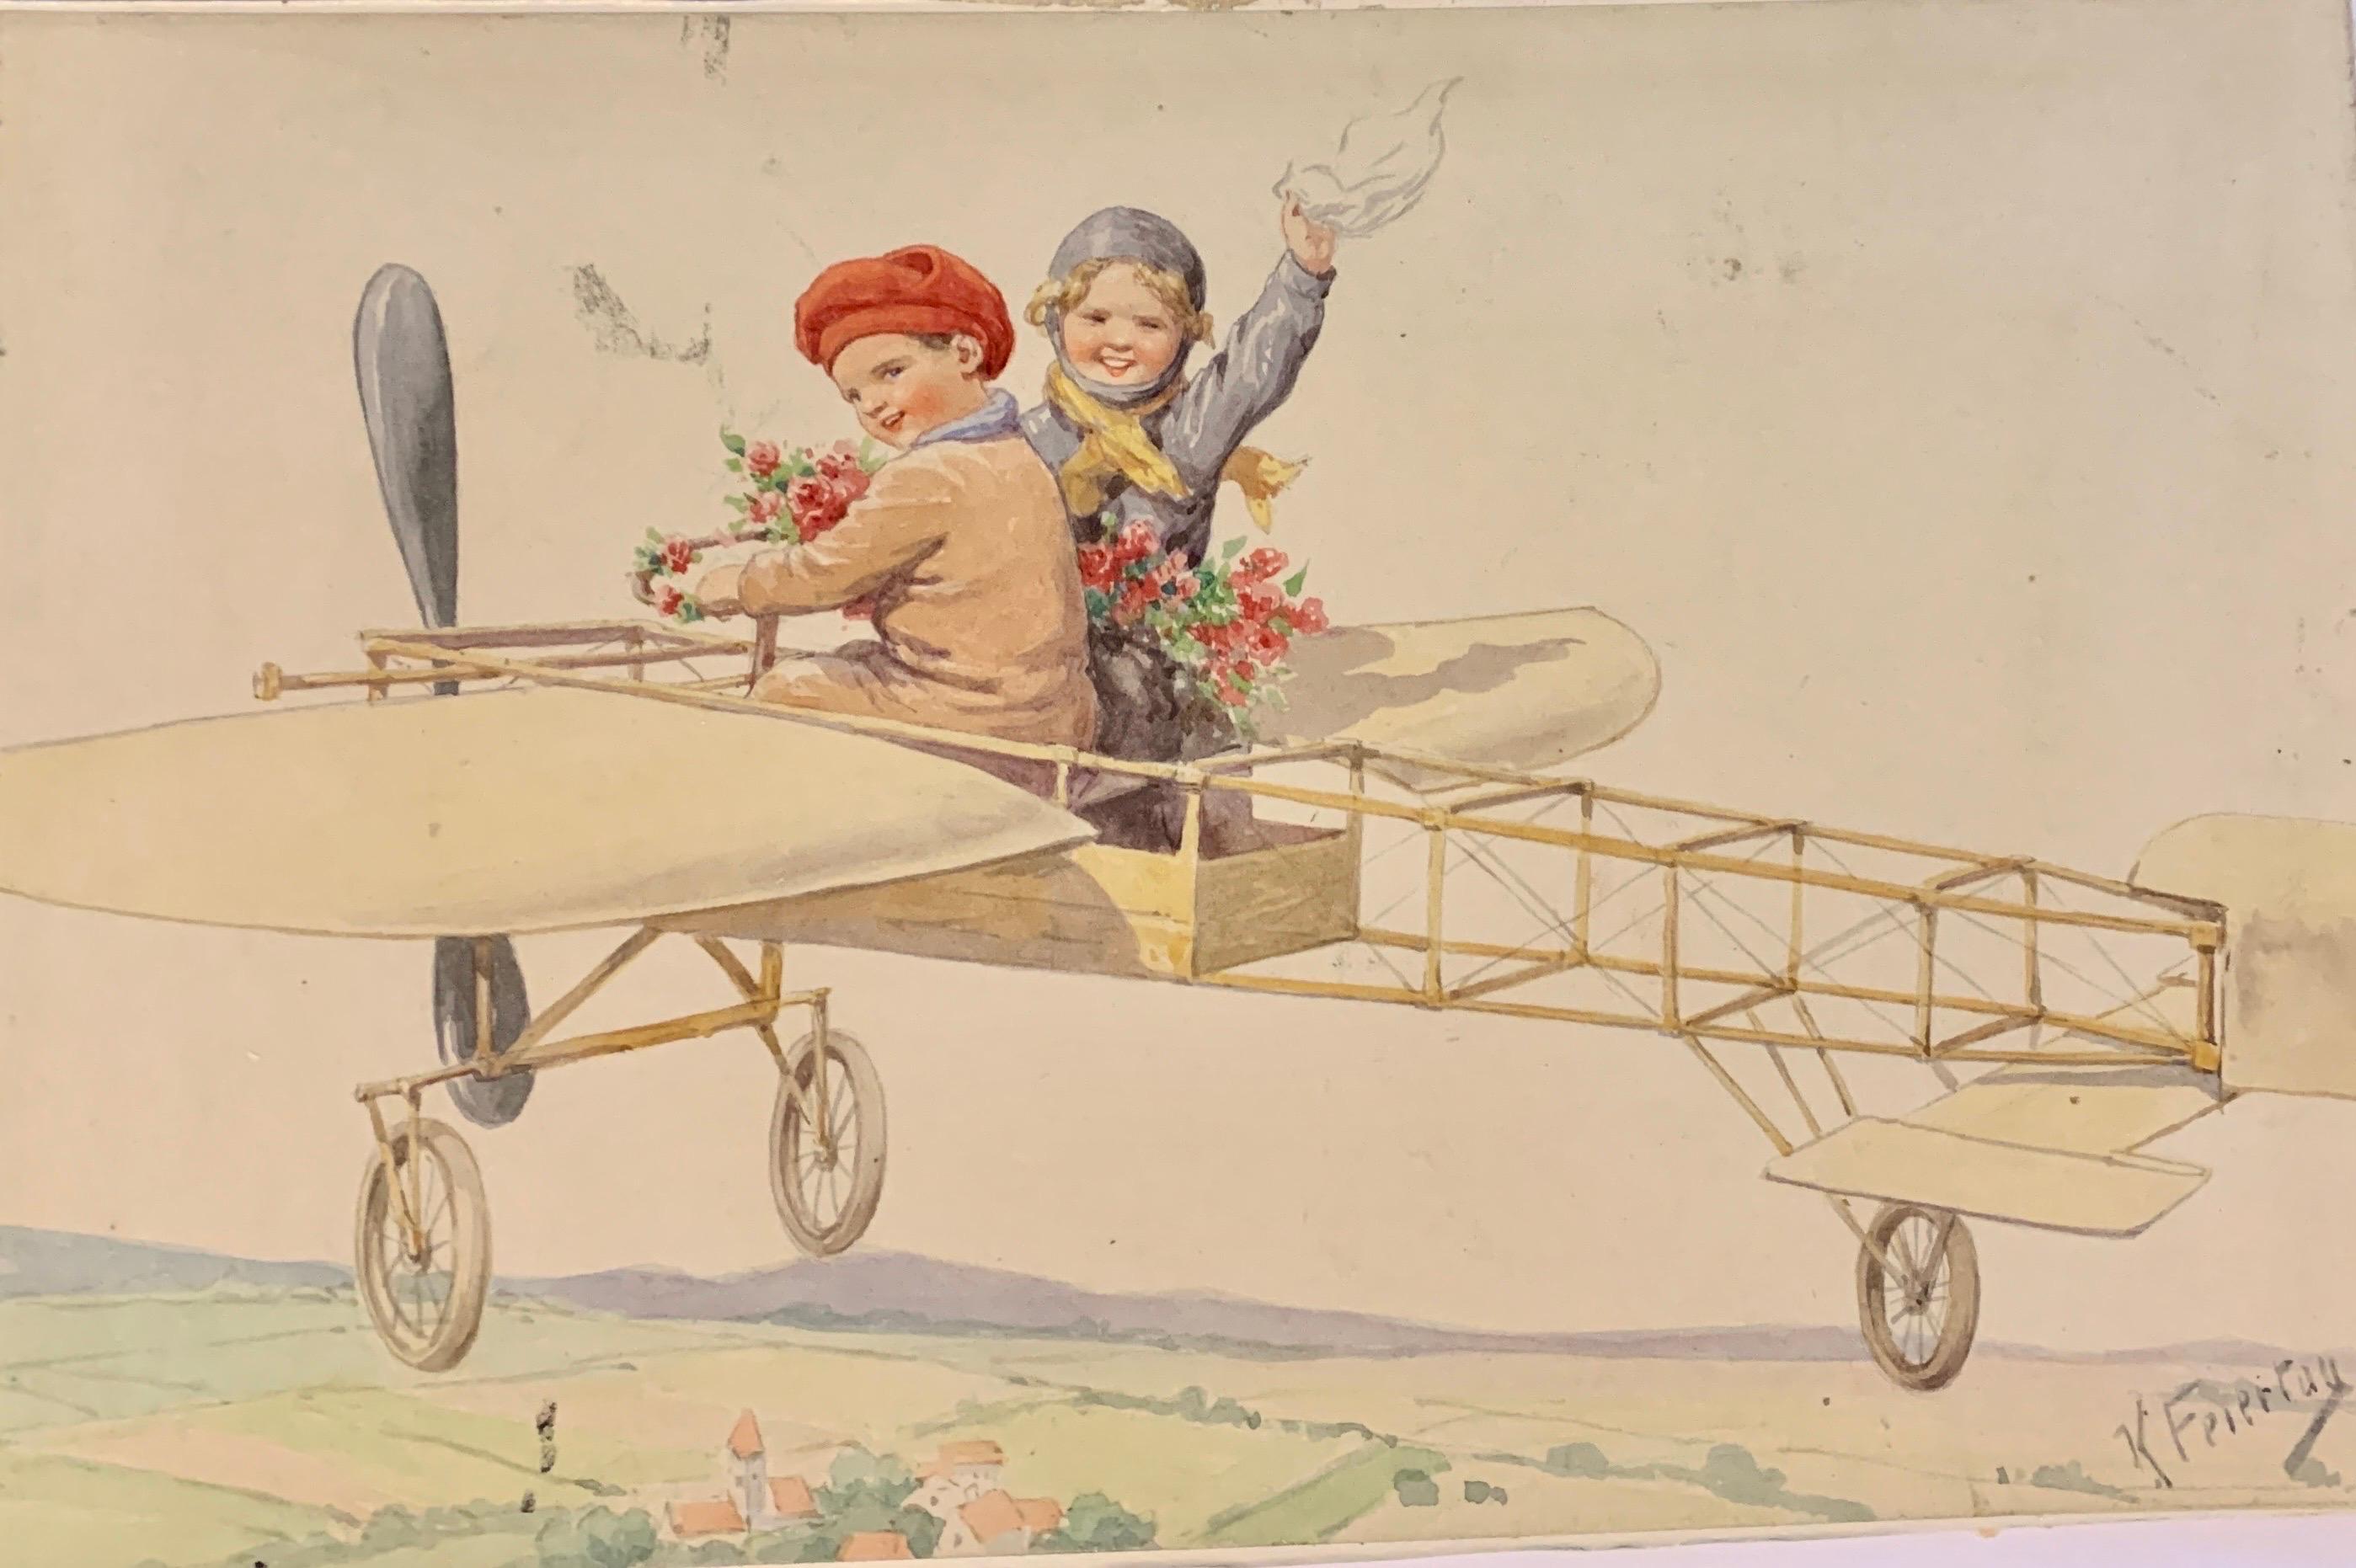 Deutsches Aquarell von Kindern, die in einem Flugzeug über einer Landschaft fliegen, aus dem 19. Jahrhundert  – Art von Karl Feiertag